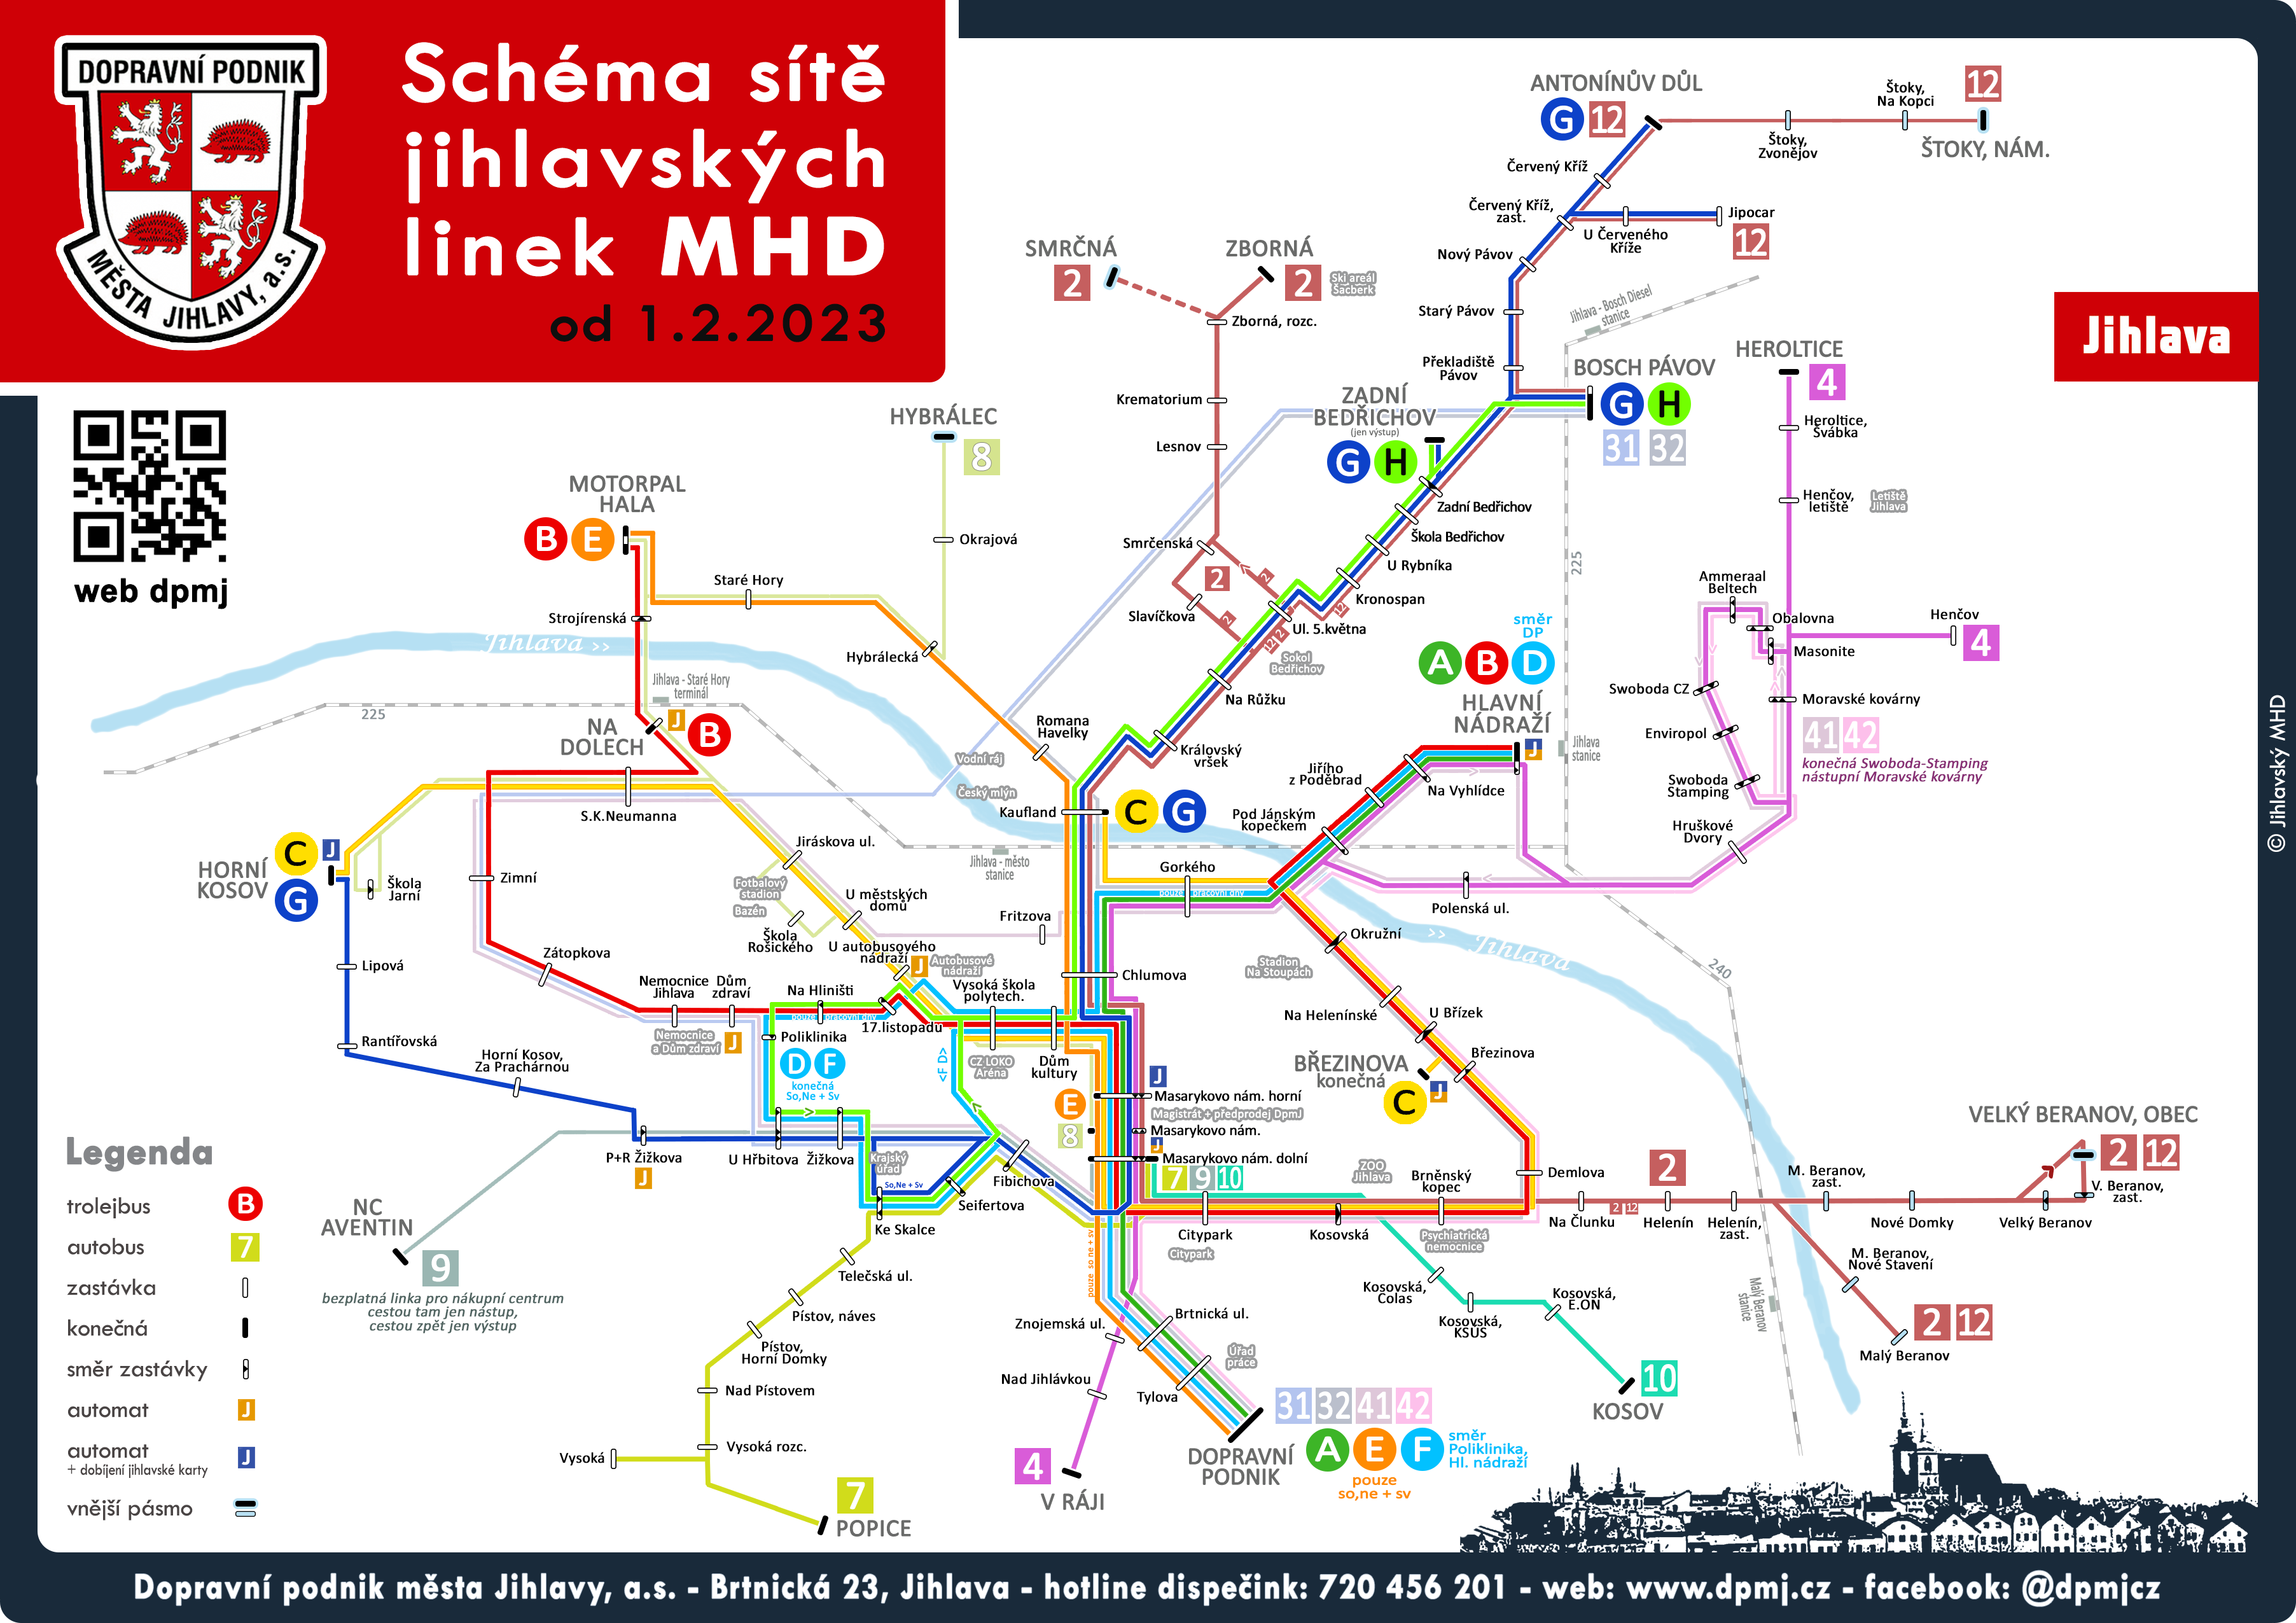 Schéma městské veřejně dopravy (MHD) v Jihlavě- Linky autobusů, trolejbusů a tramvají